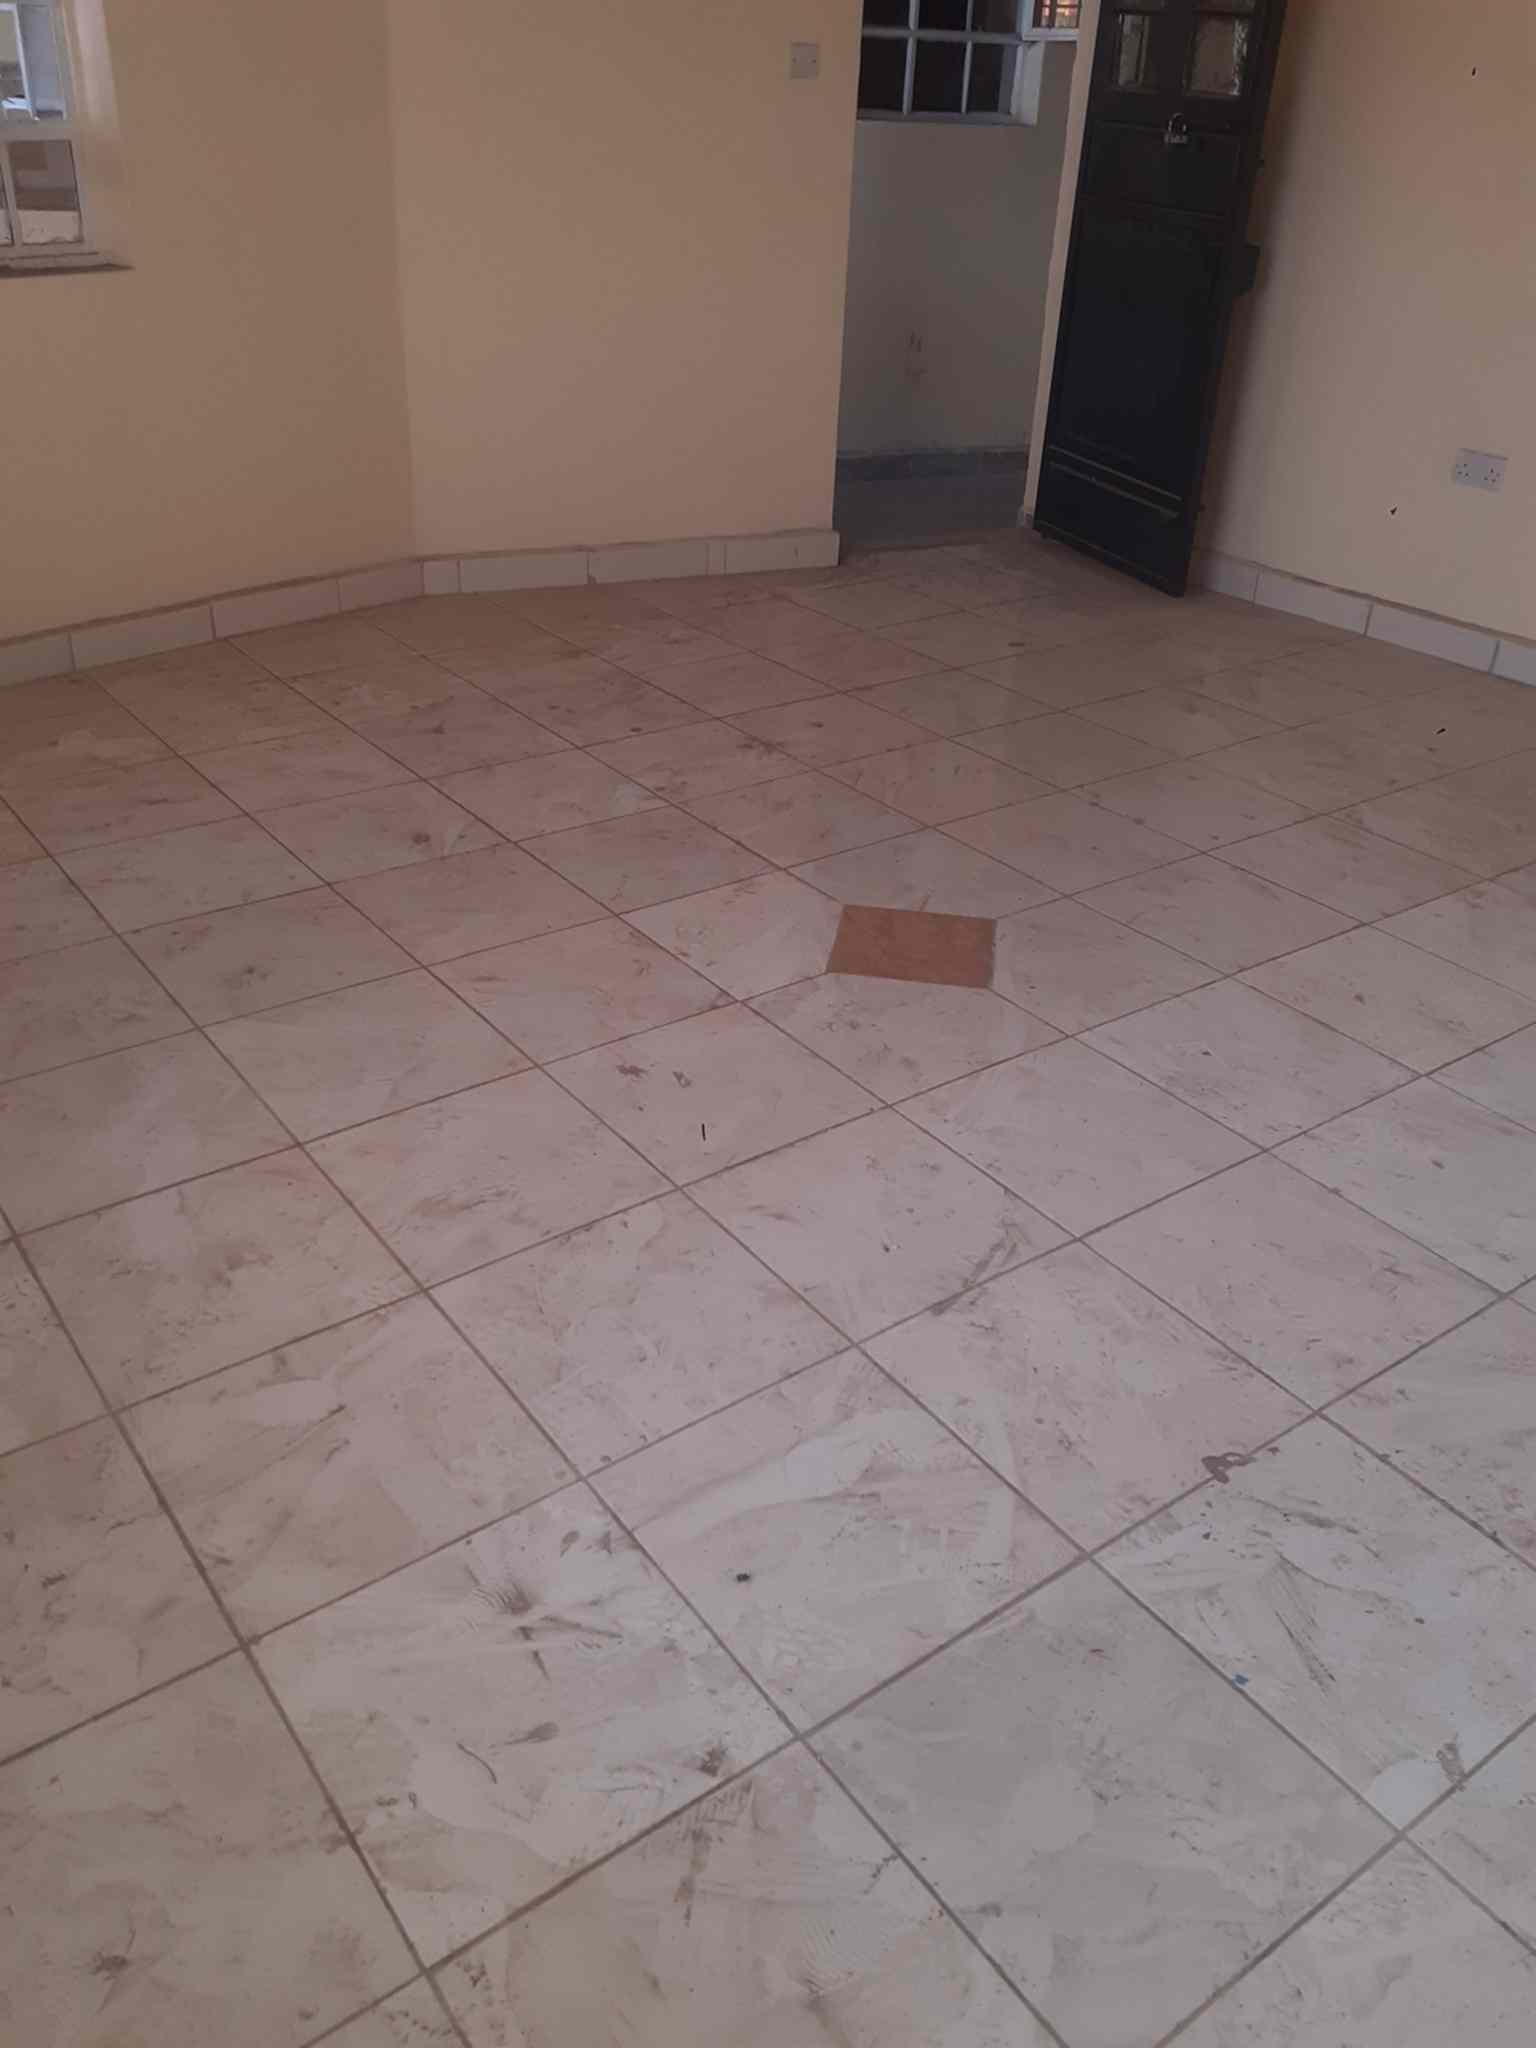 2 bedroom apartment for rent in buruburu hamza